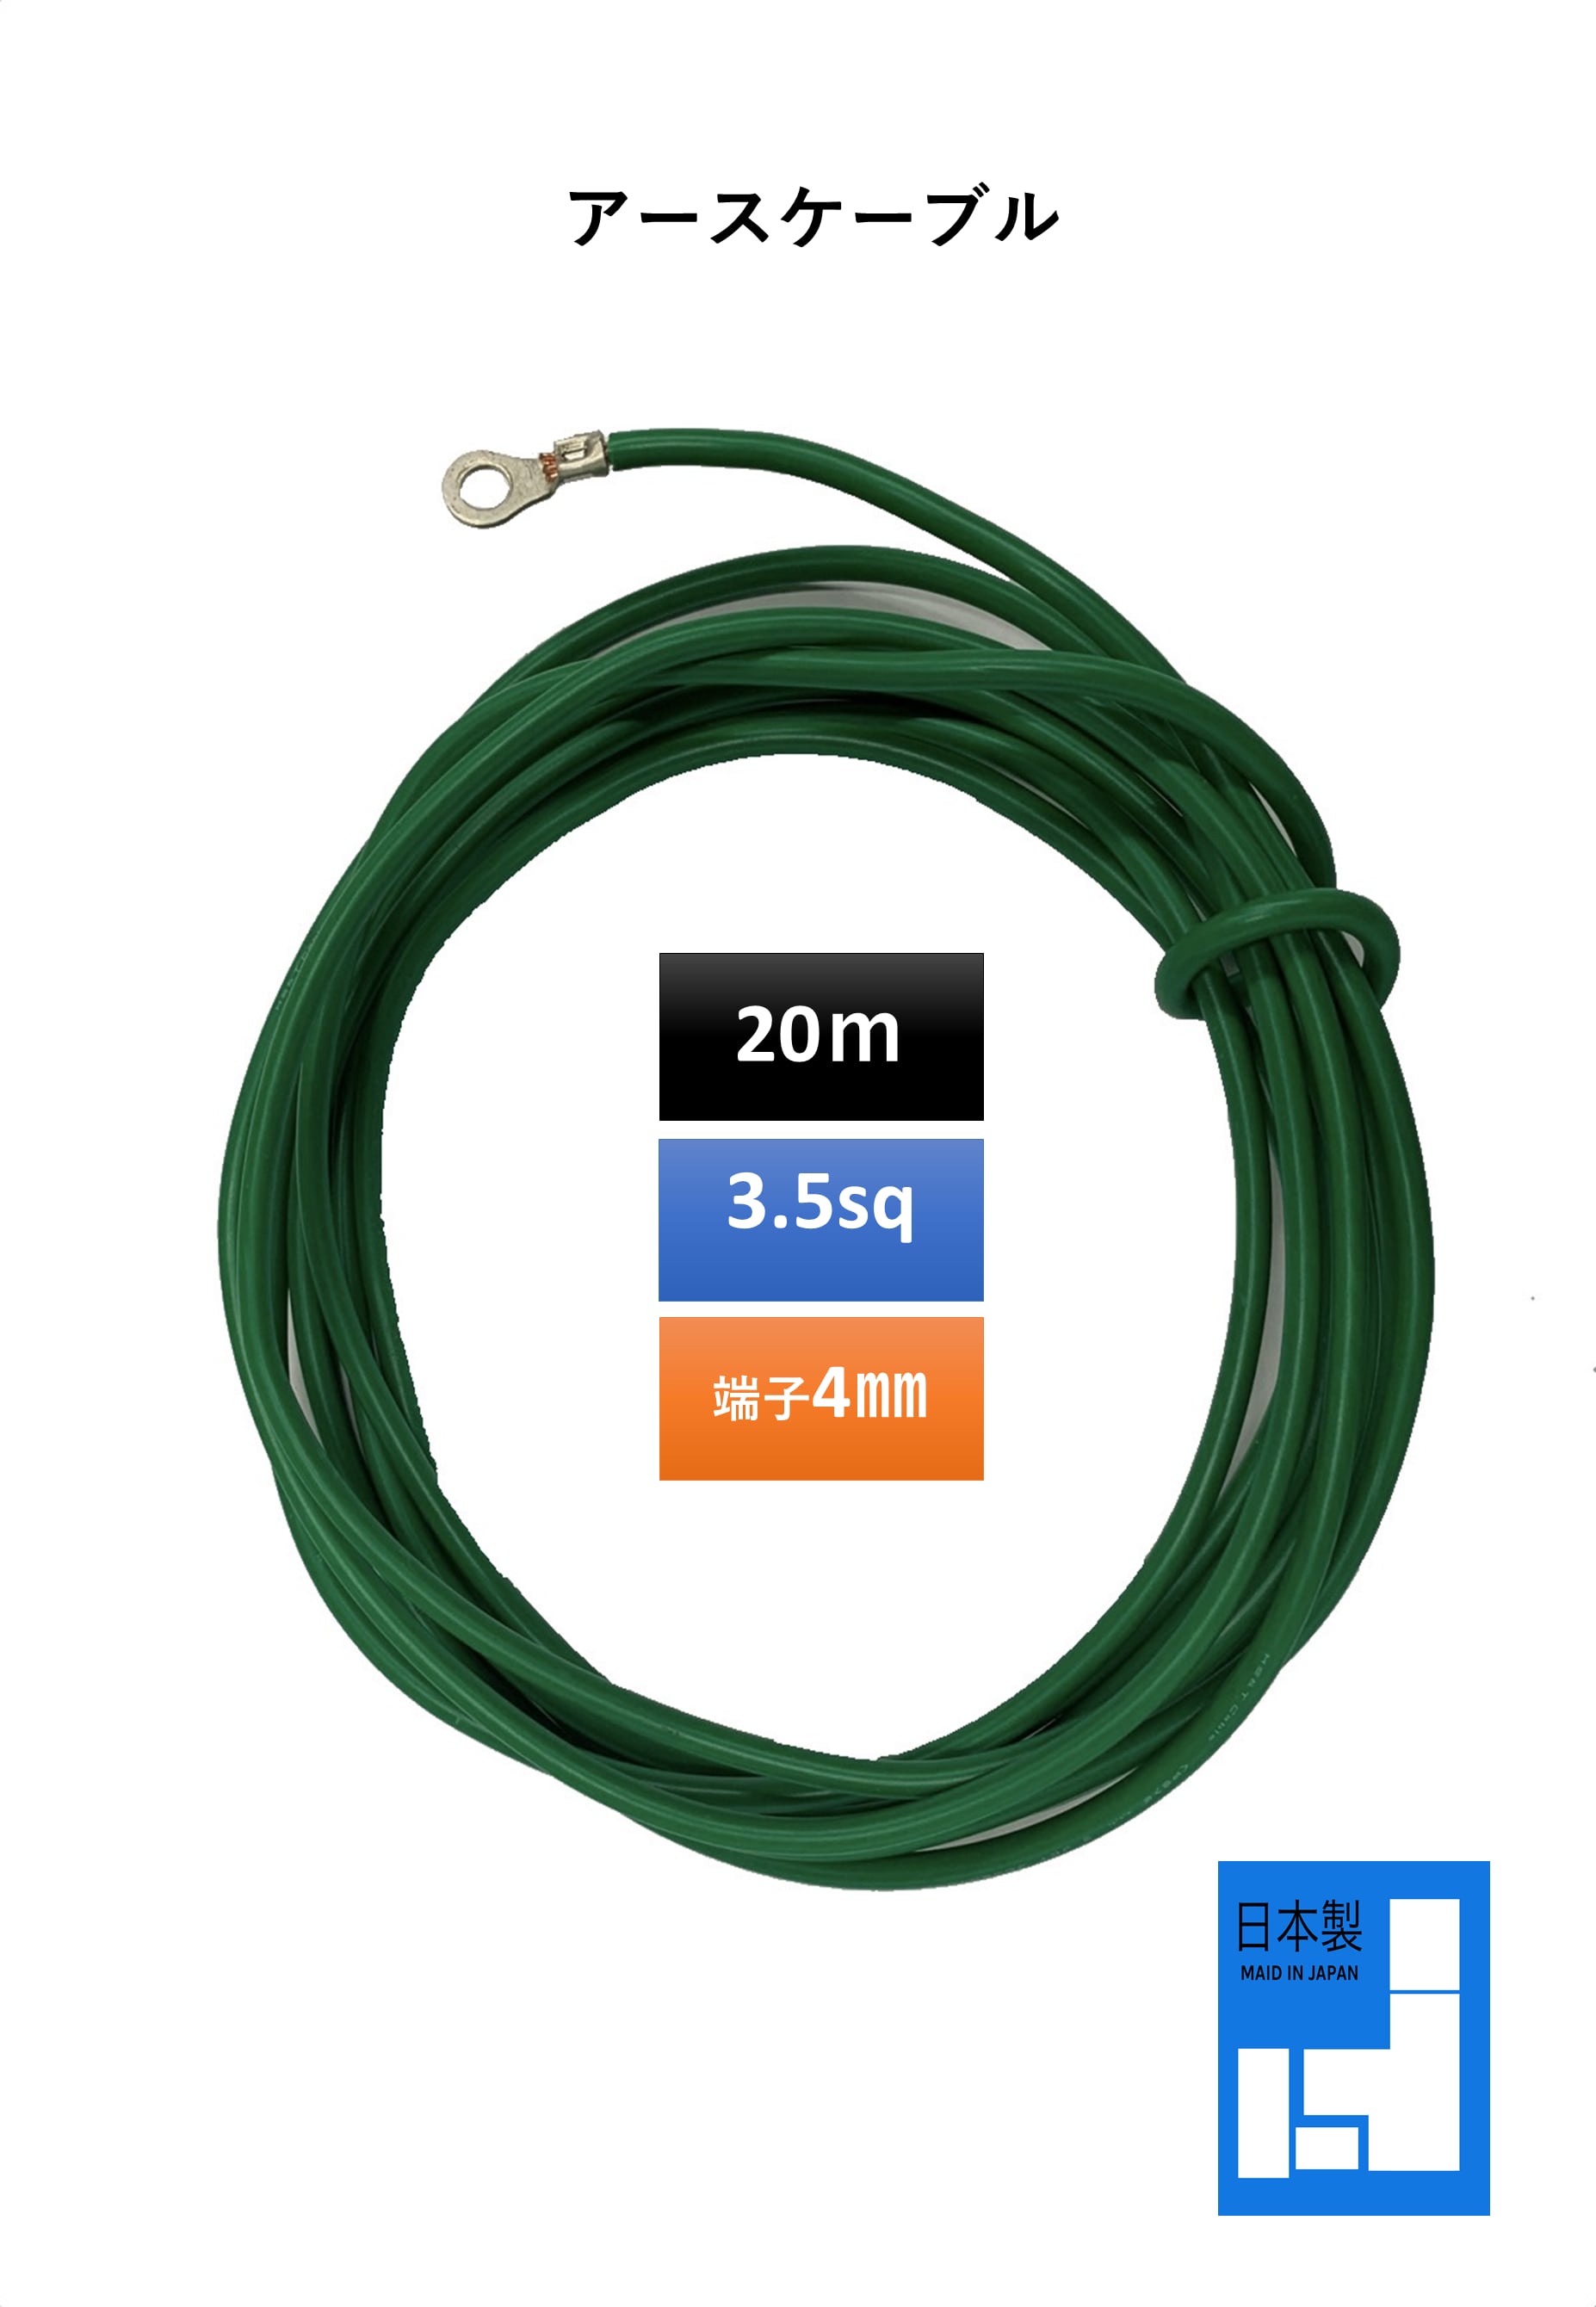 魅力の フジクラダイヤケーブル EM-IE5.5SQ 屋内用絶縁電線 600Ｖ耐燃性ポリエチレン絶縁電線 より線 色 緑 切売 10mから 